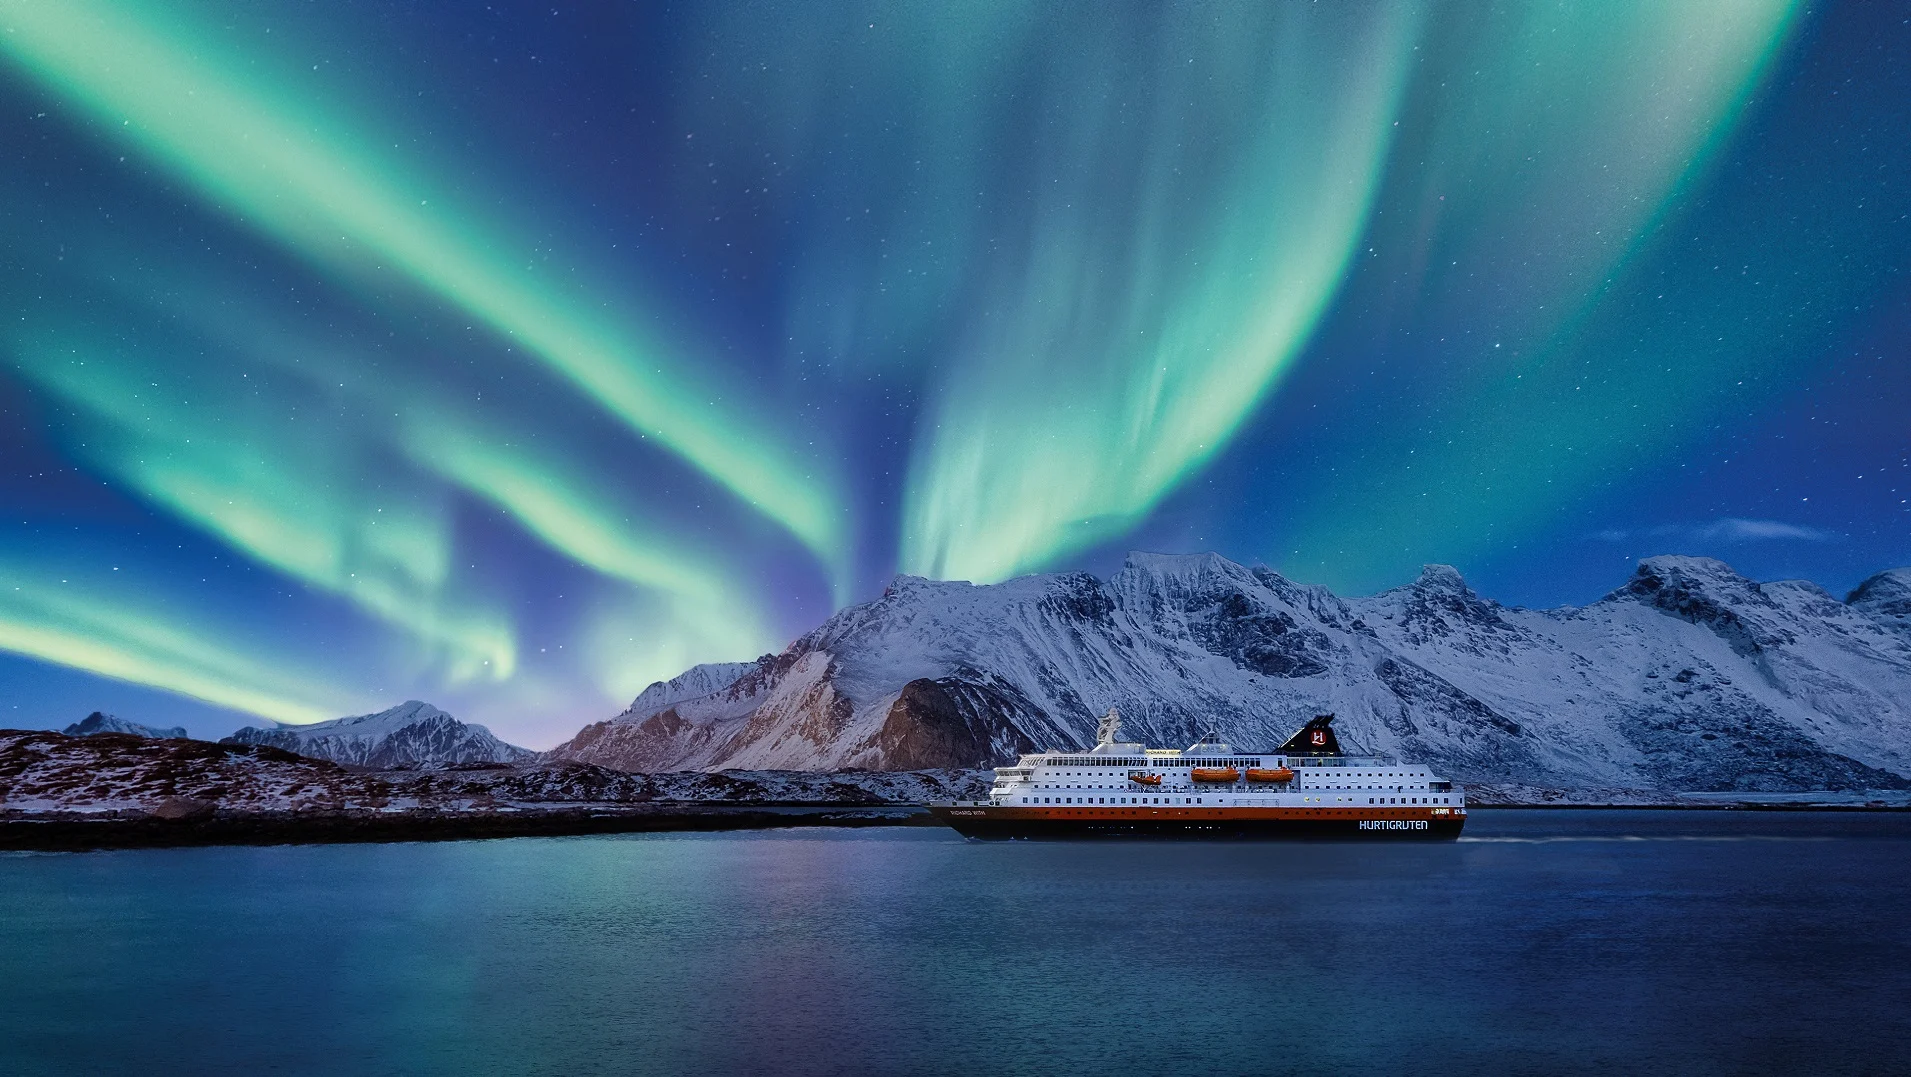 A Hurtigruten ship under the Northern Lights